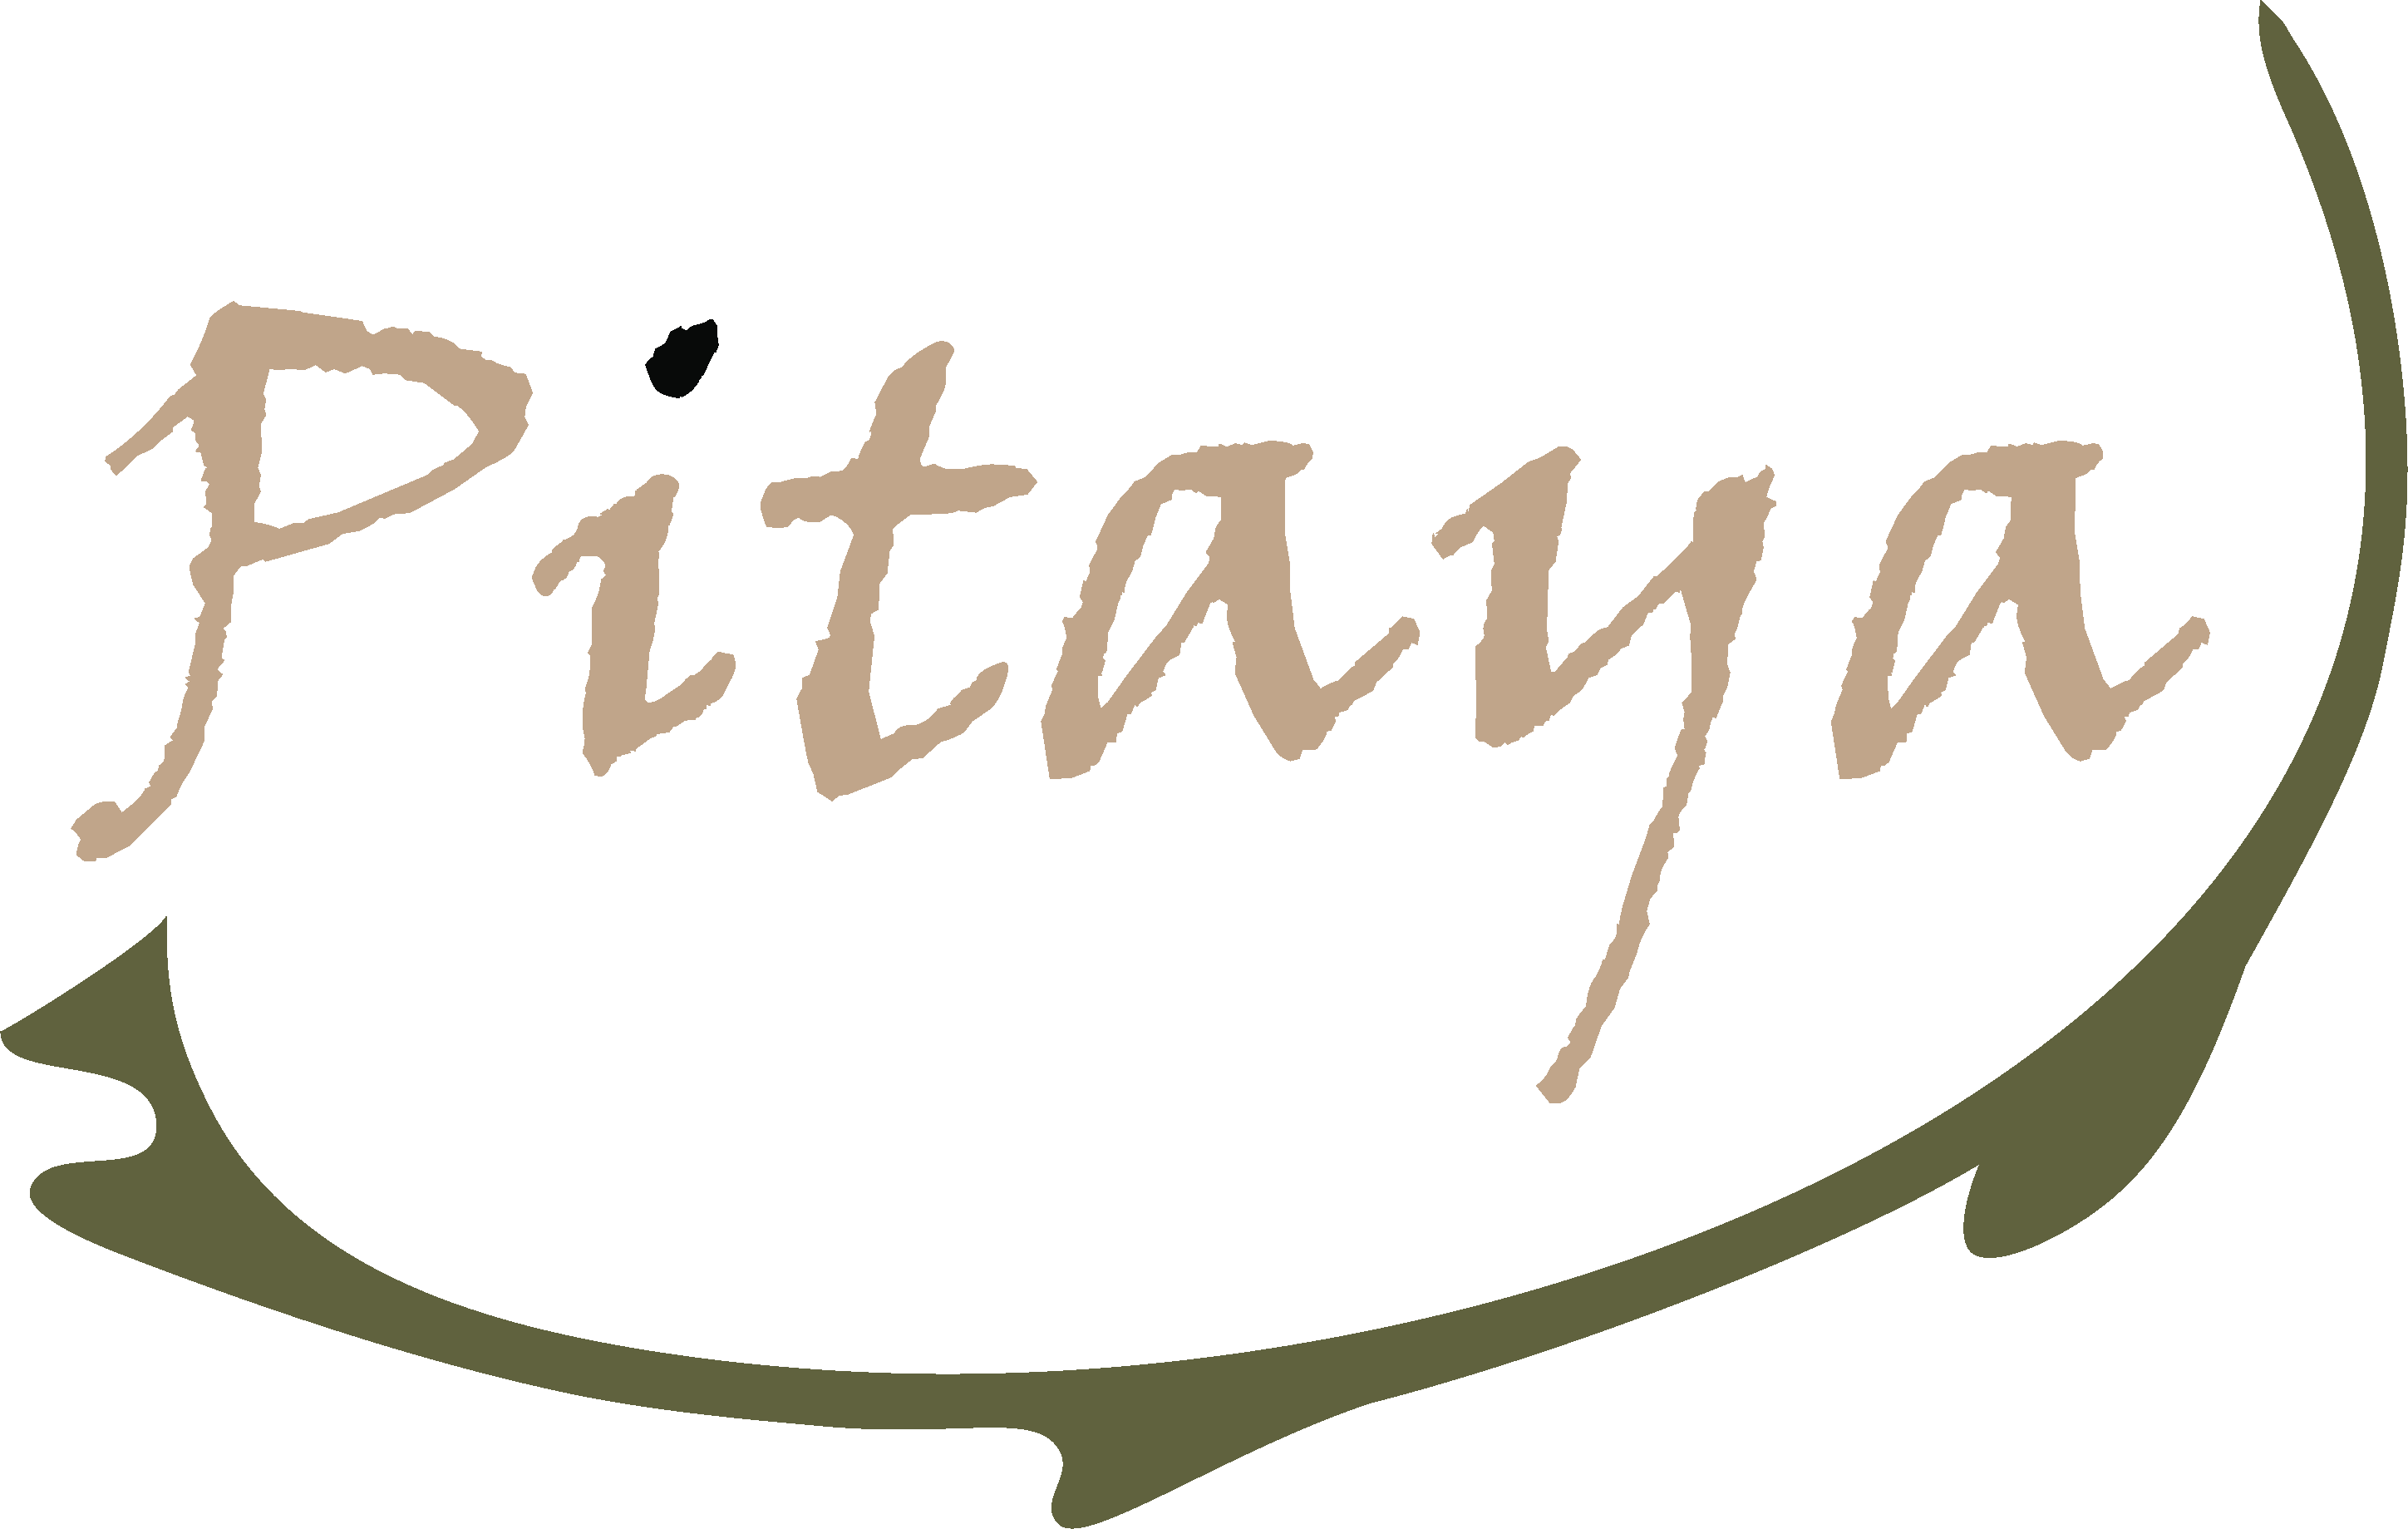 Pitaya logo 900 x 900